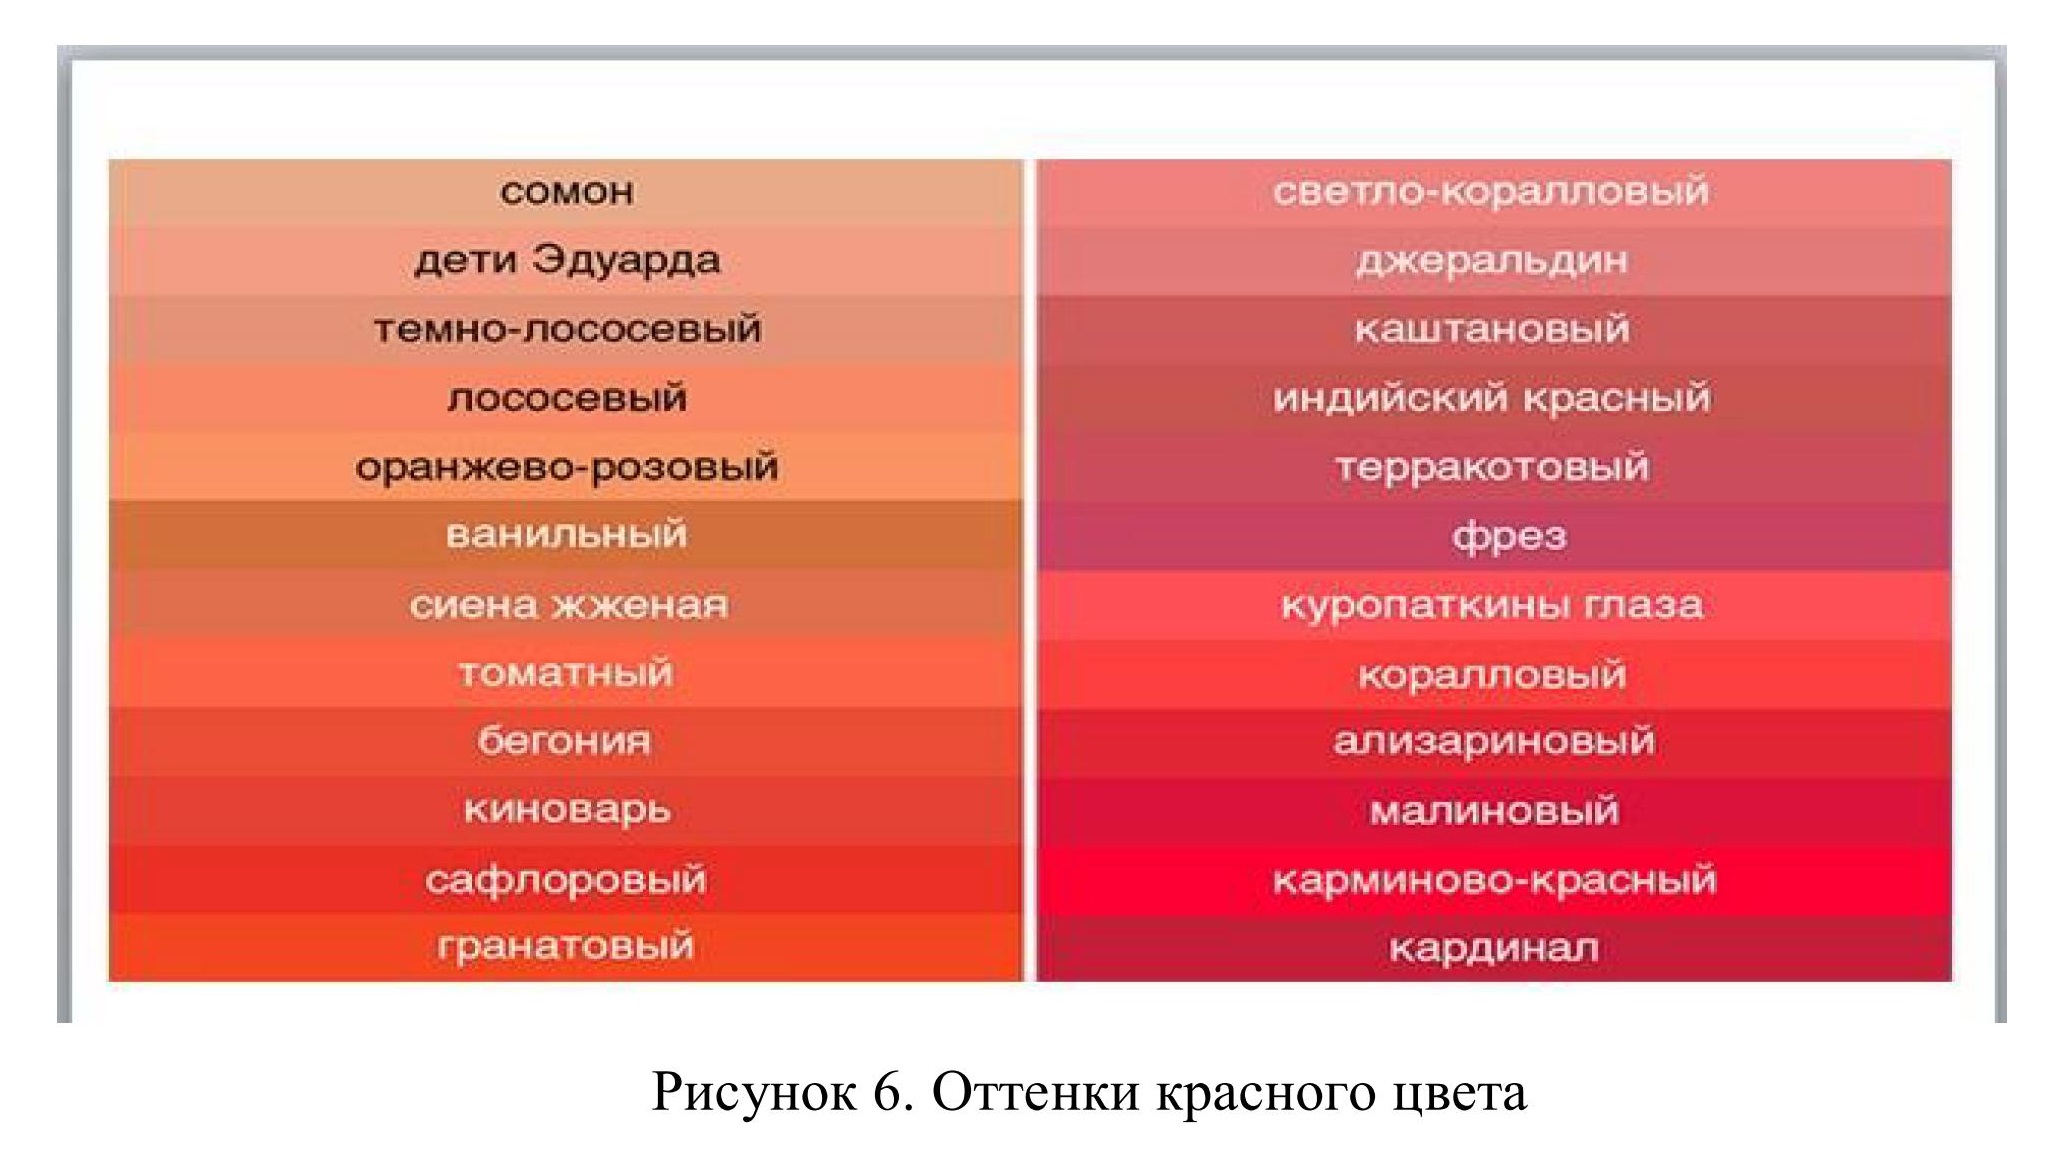 Дубоносова Е. А. Анализ символического значения оттенков цвета в костюме вразные исторические периоды